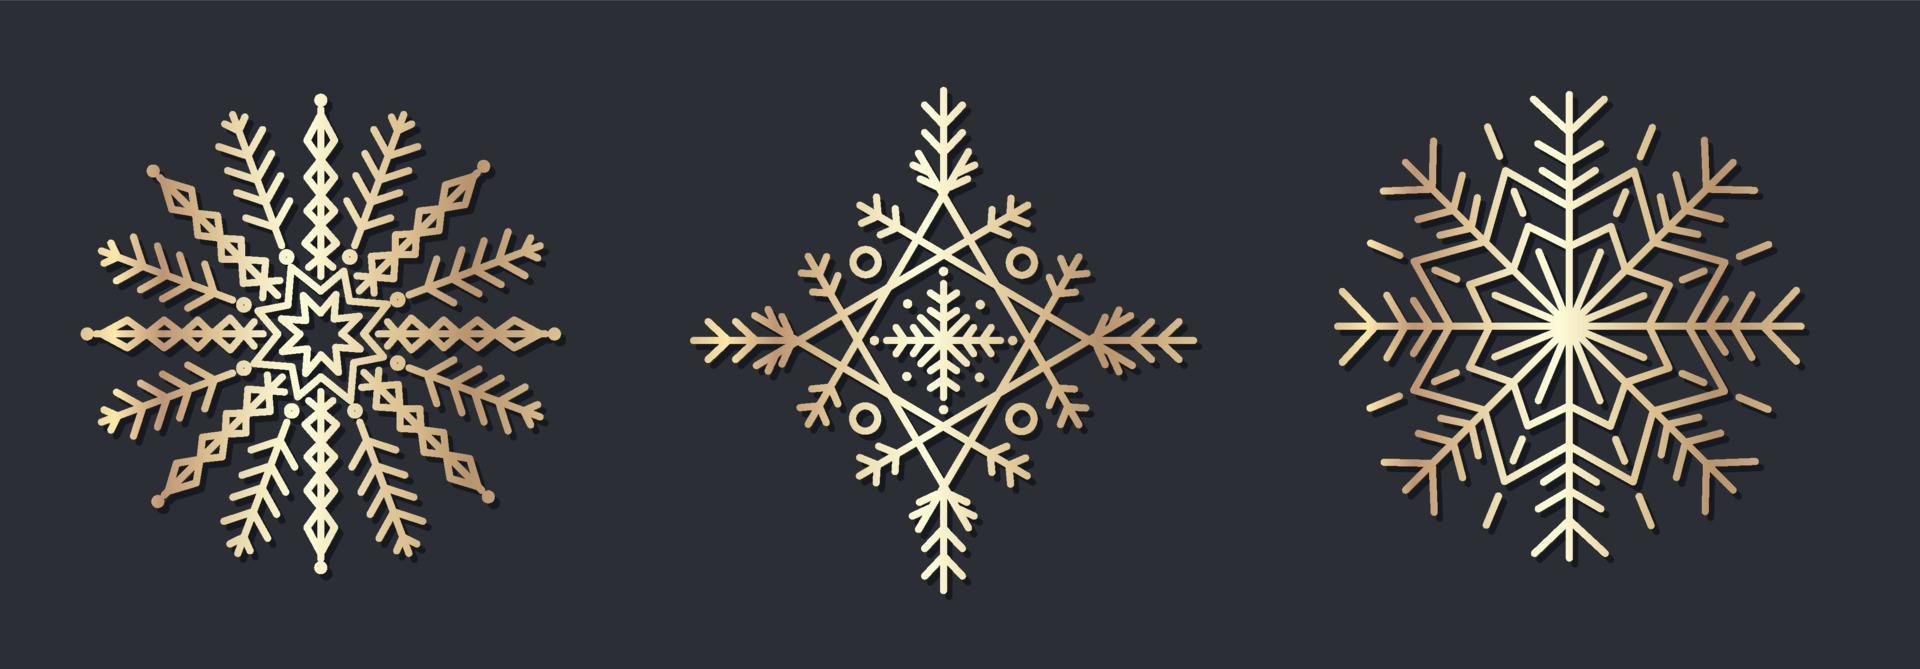 conjunto de adornos decorativos de copos de nieve dorados vector